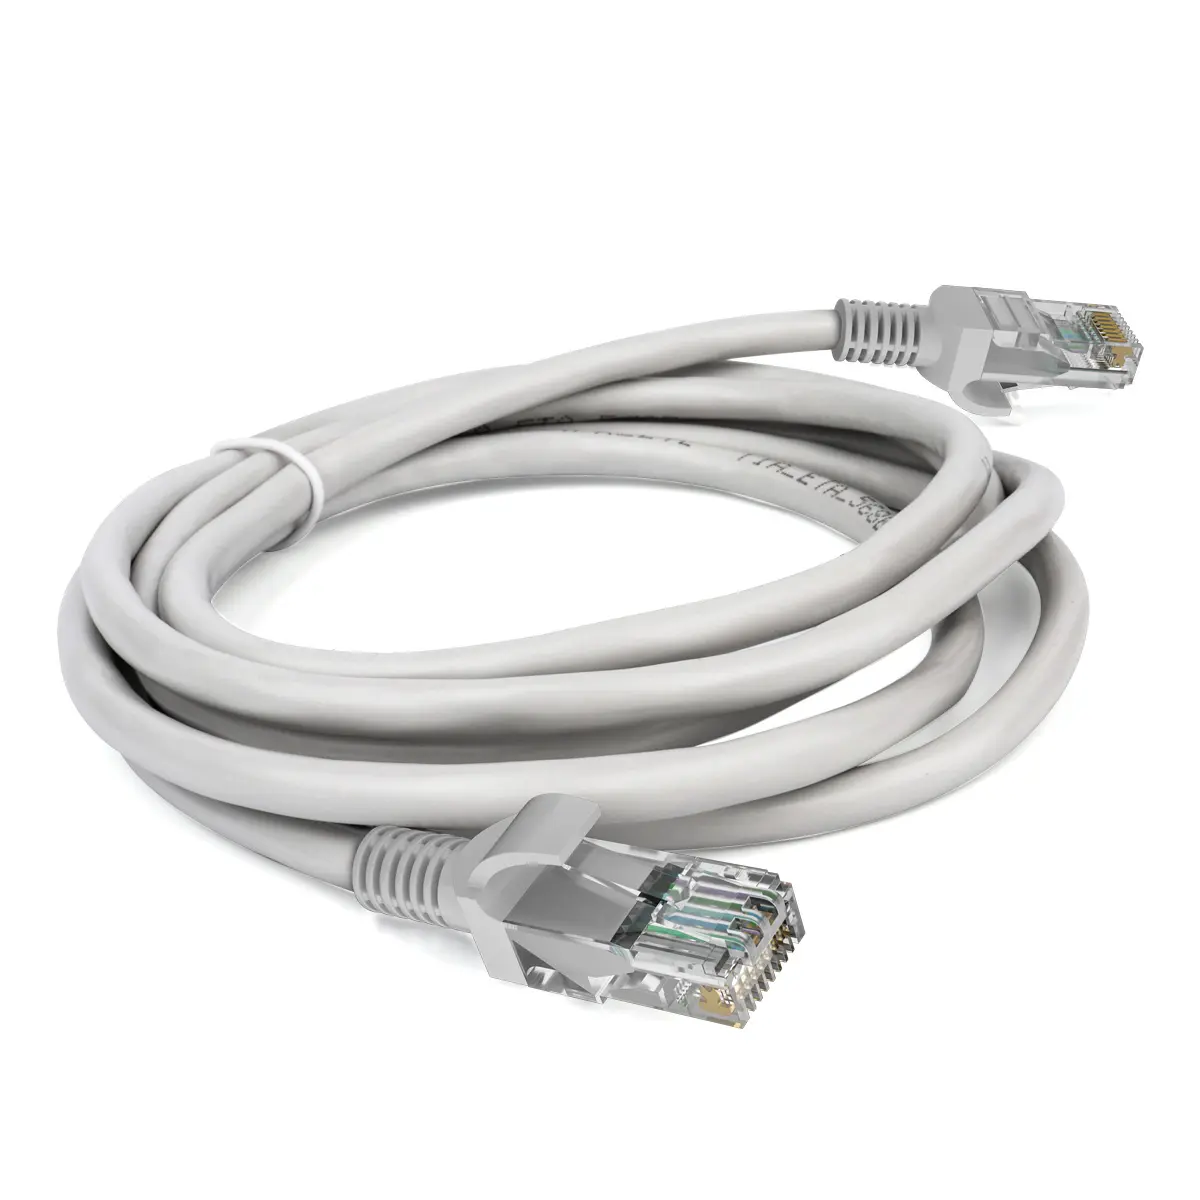 Kabel Ethernet kabel Rj45 kabel Lan untuk betina Ke betina Utp Stp 4 kabel jaringan Twisted pasangan Cat5 Cat6 Cat7